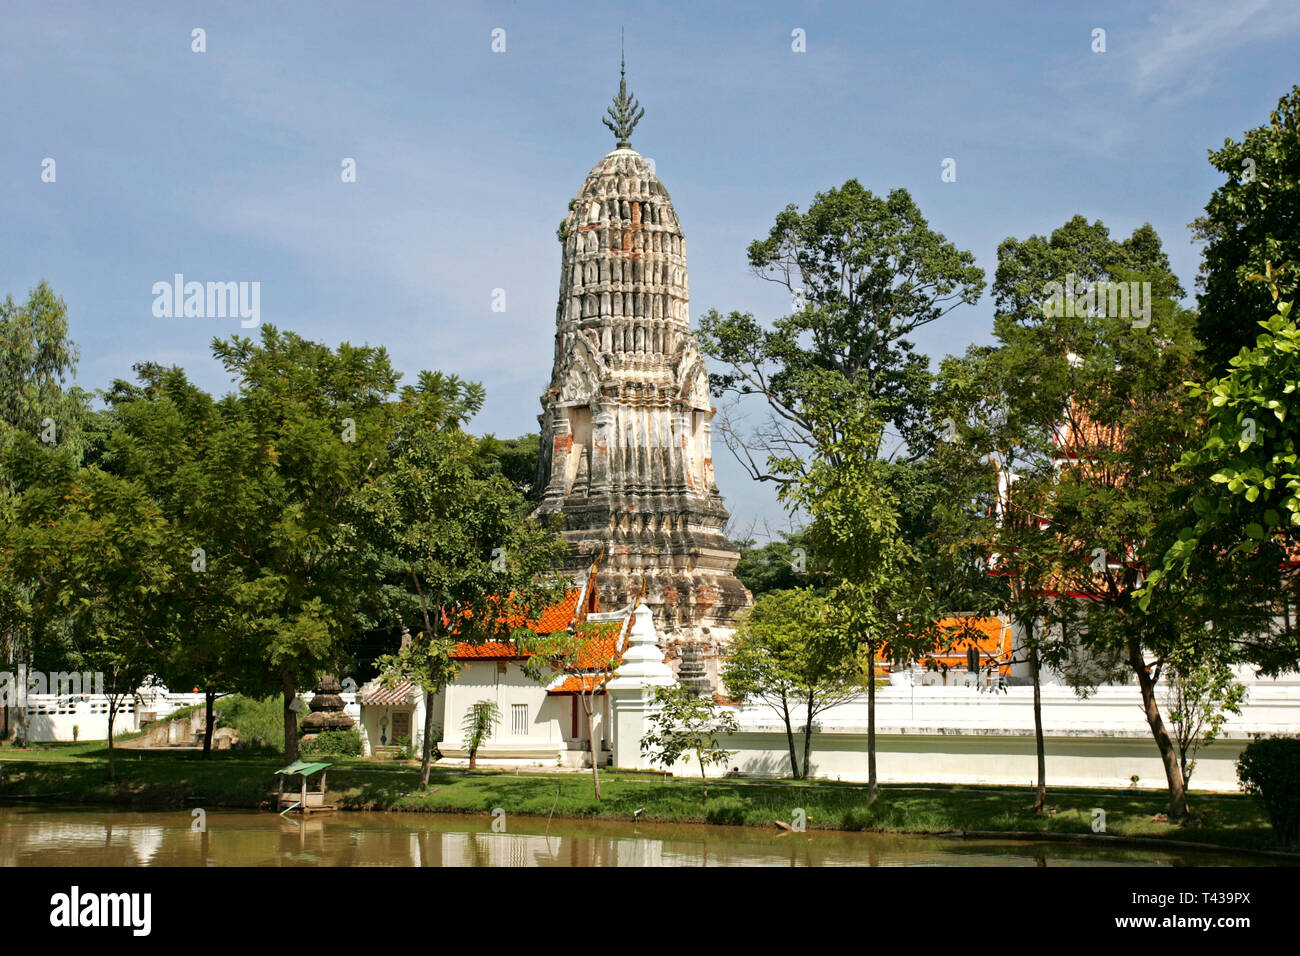 Wat Kasatathirat Worawihan temple in Ayutthaya, Thailand, Southeast Asia, Asia Stock Photo